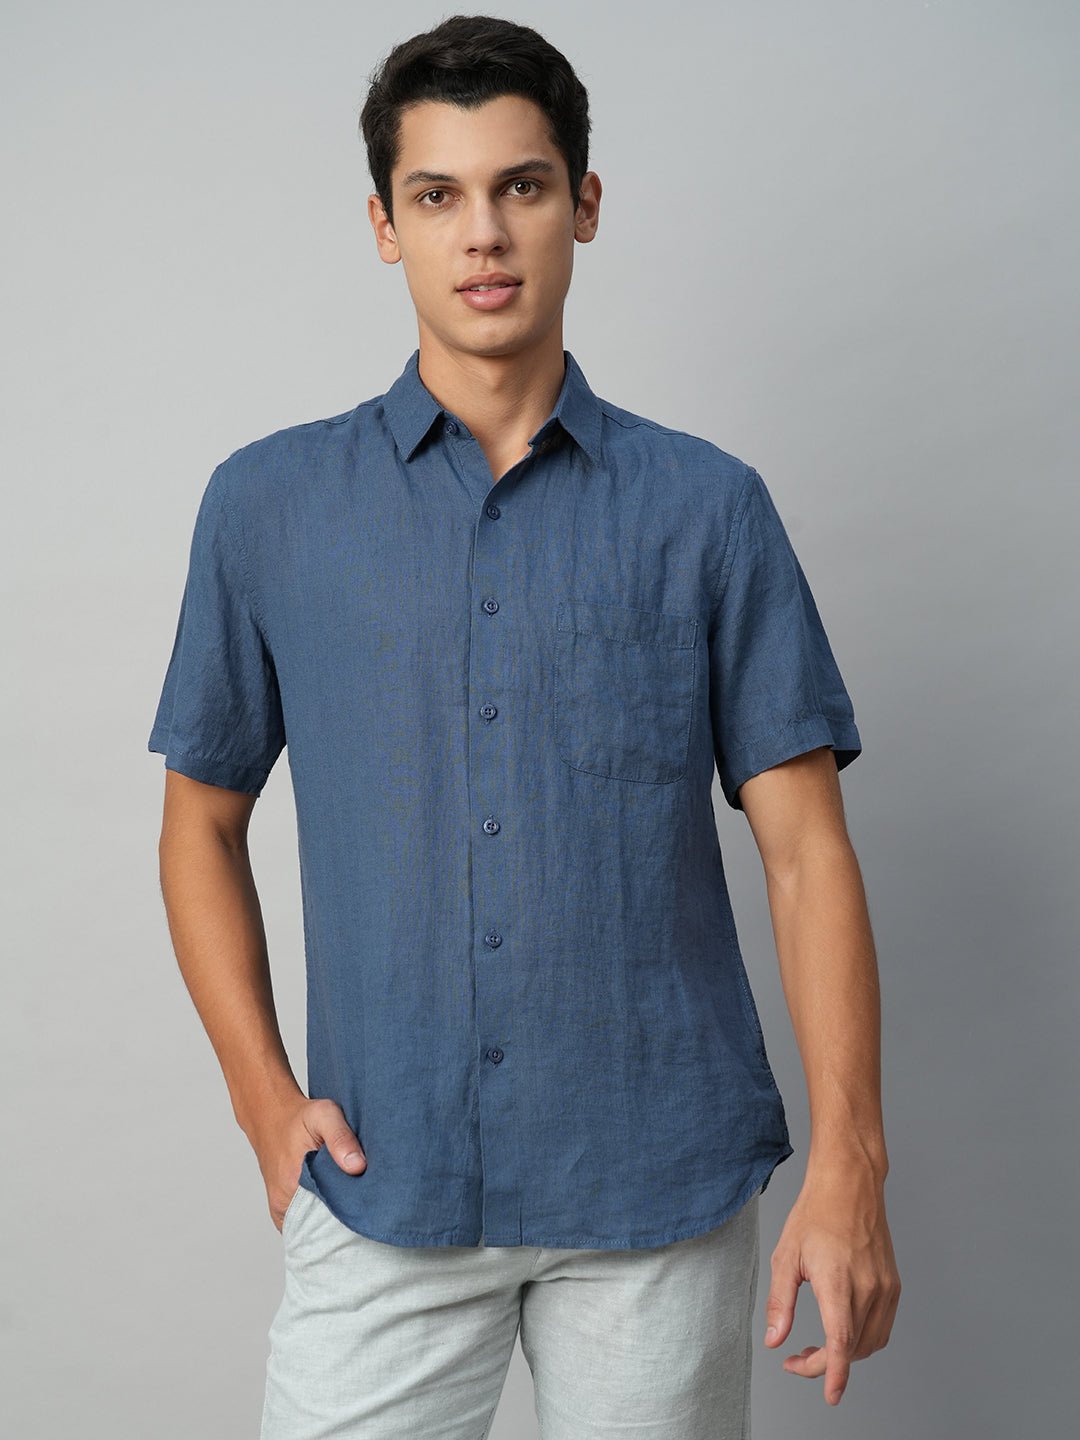 Men's 100% Linen Navy Blue Regular Fit Short Sleeve Shirt